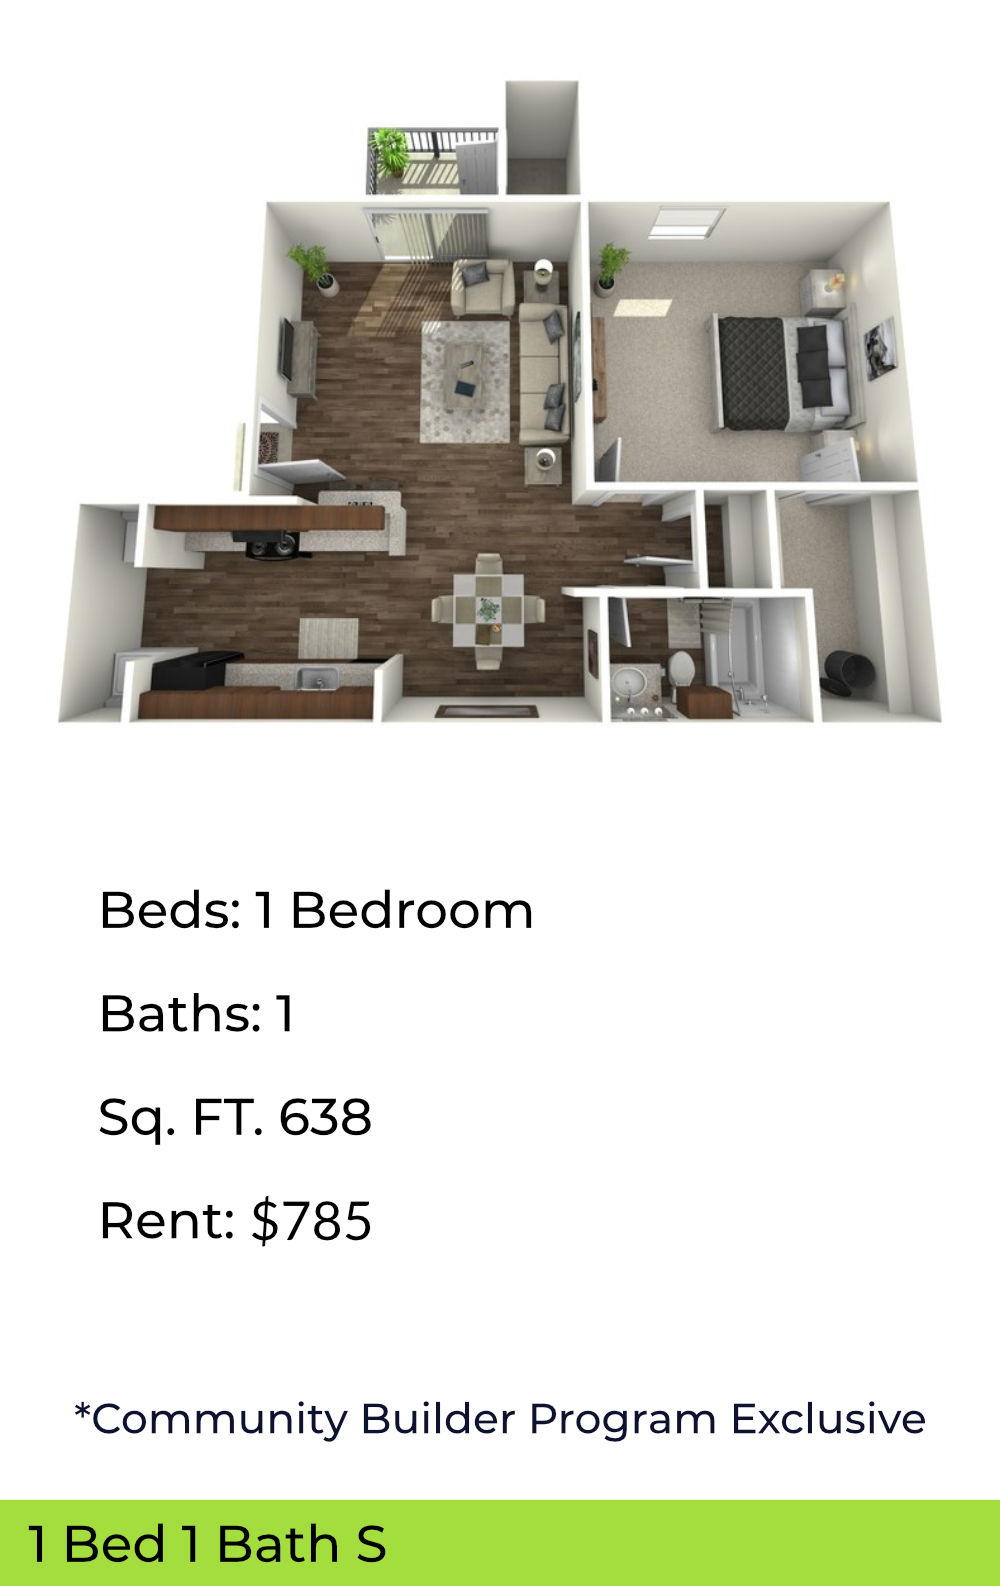 floor plan of 1 bedroom unit